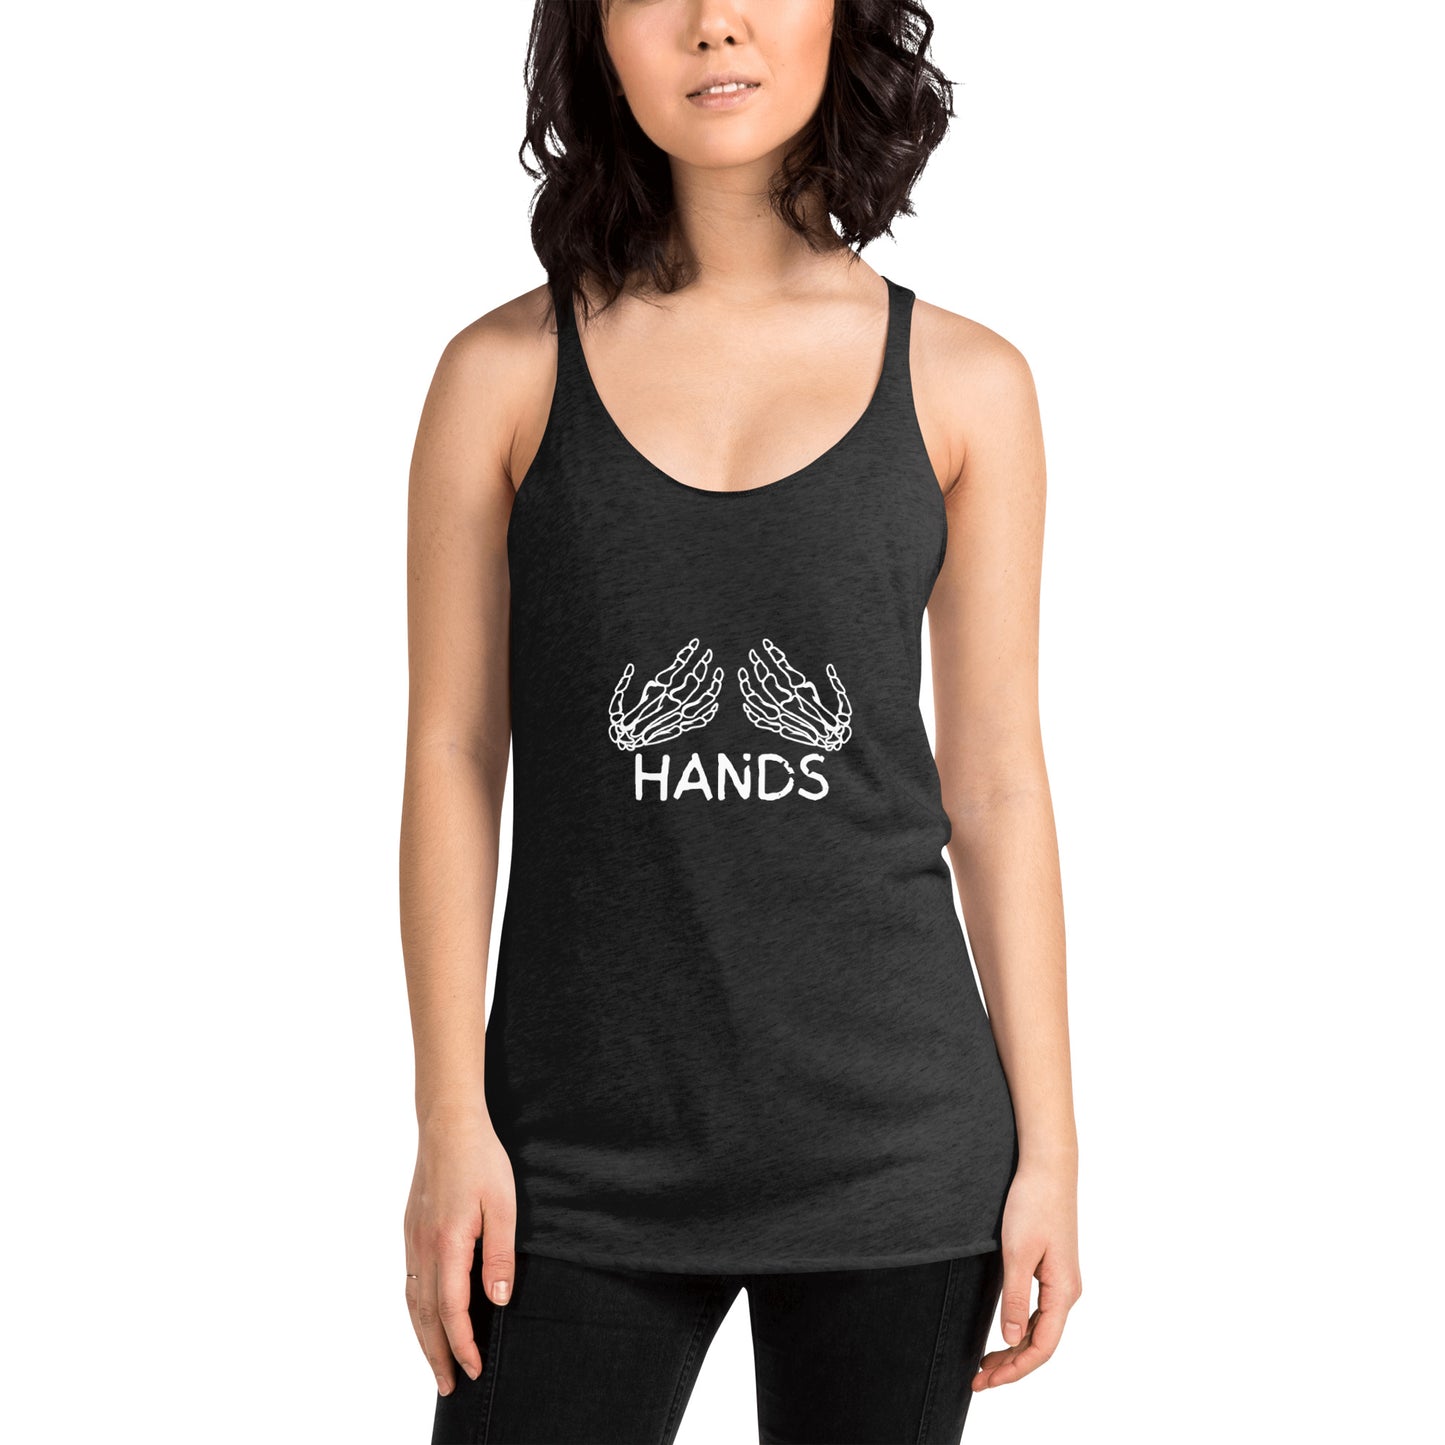 HANDS BLACK Women's Racerback Tank